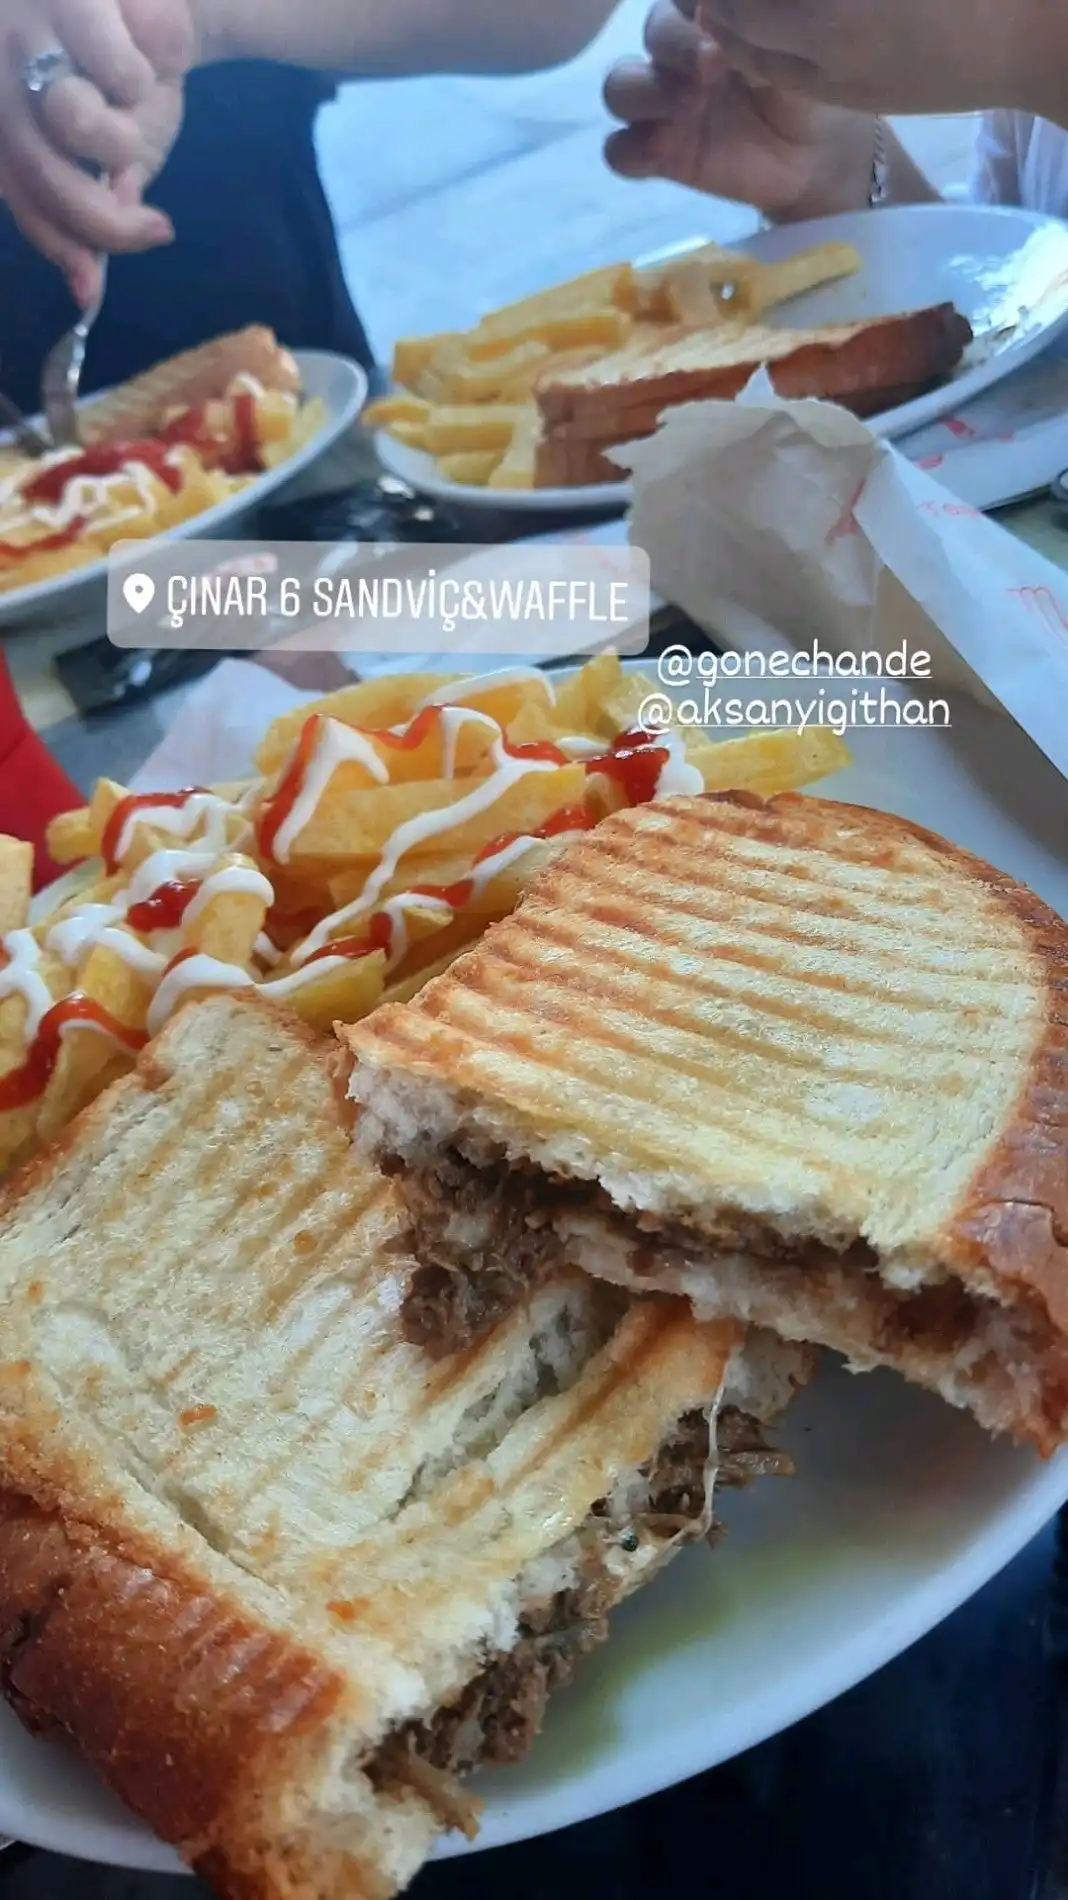 Çınar6 Sandwiç & Waffle